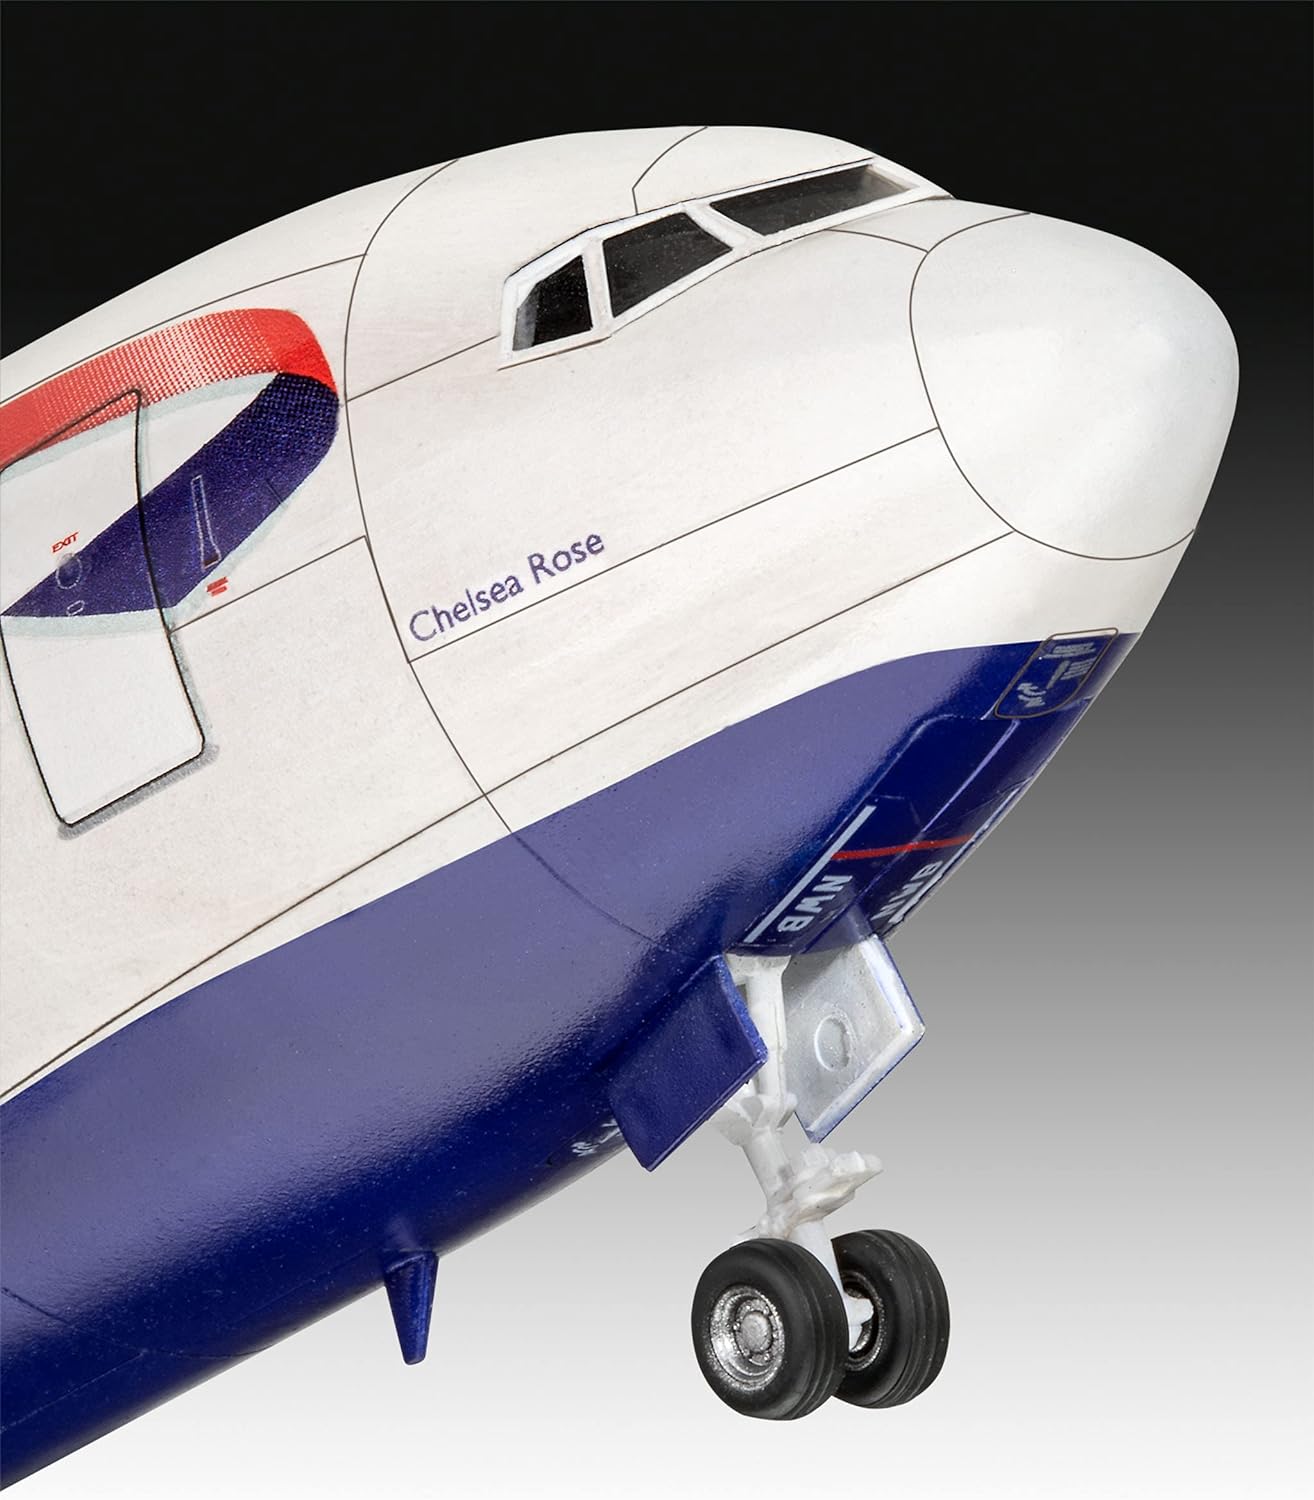 Boeing 767-300ER  British Airways 1:144 Scale Kit